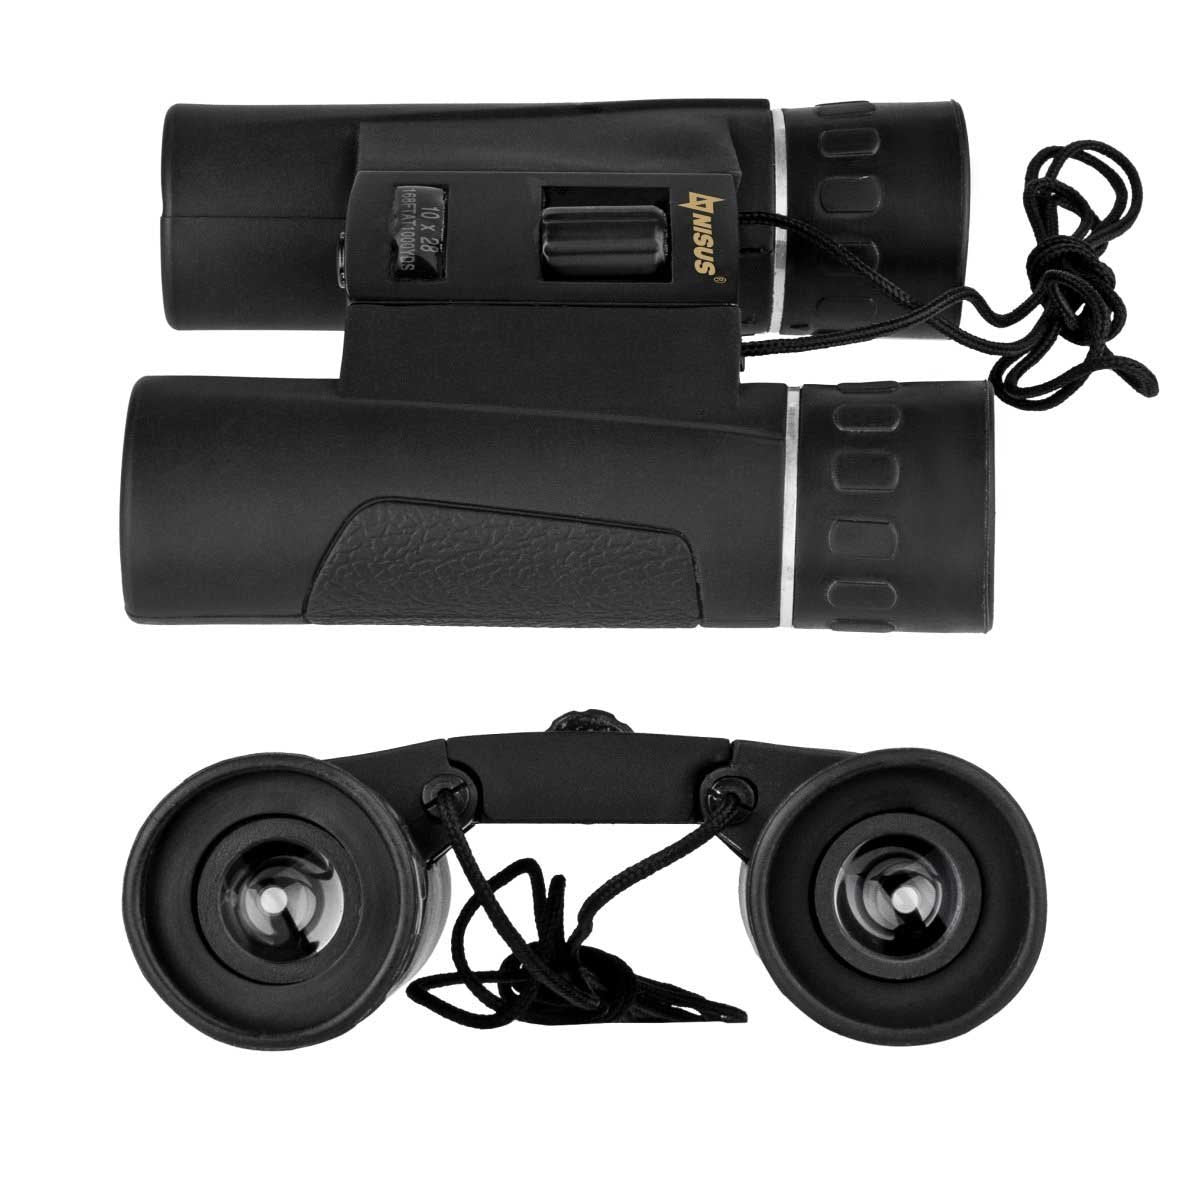 10х28 Nisus Power Adjustable Field Binocular with a carry rope